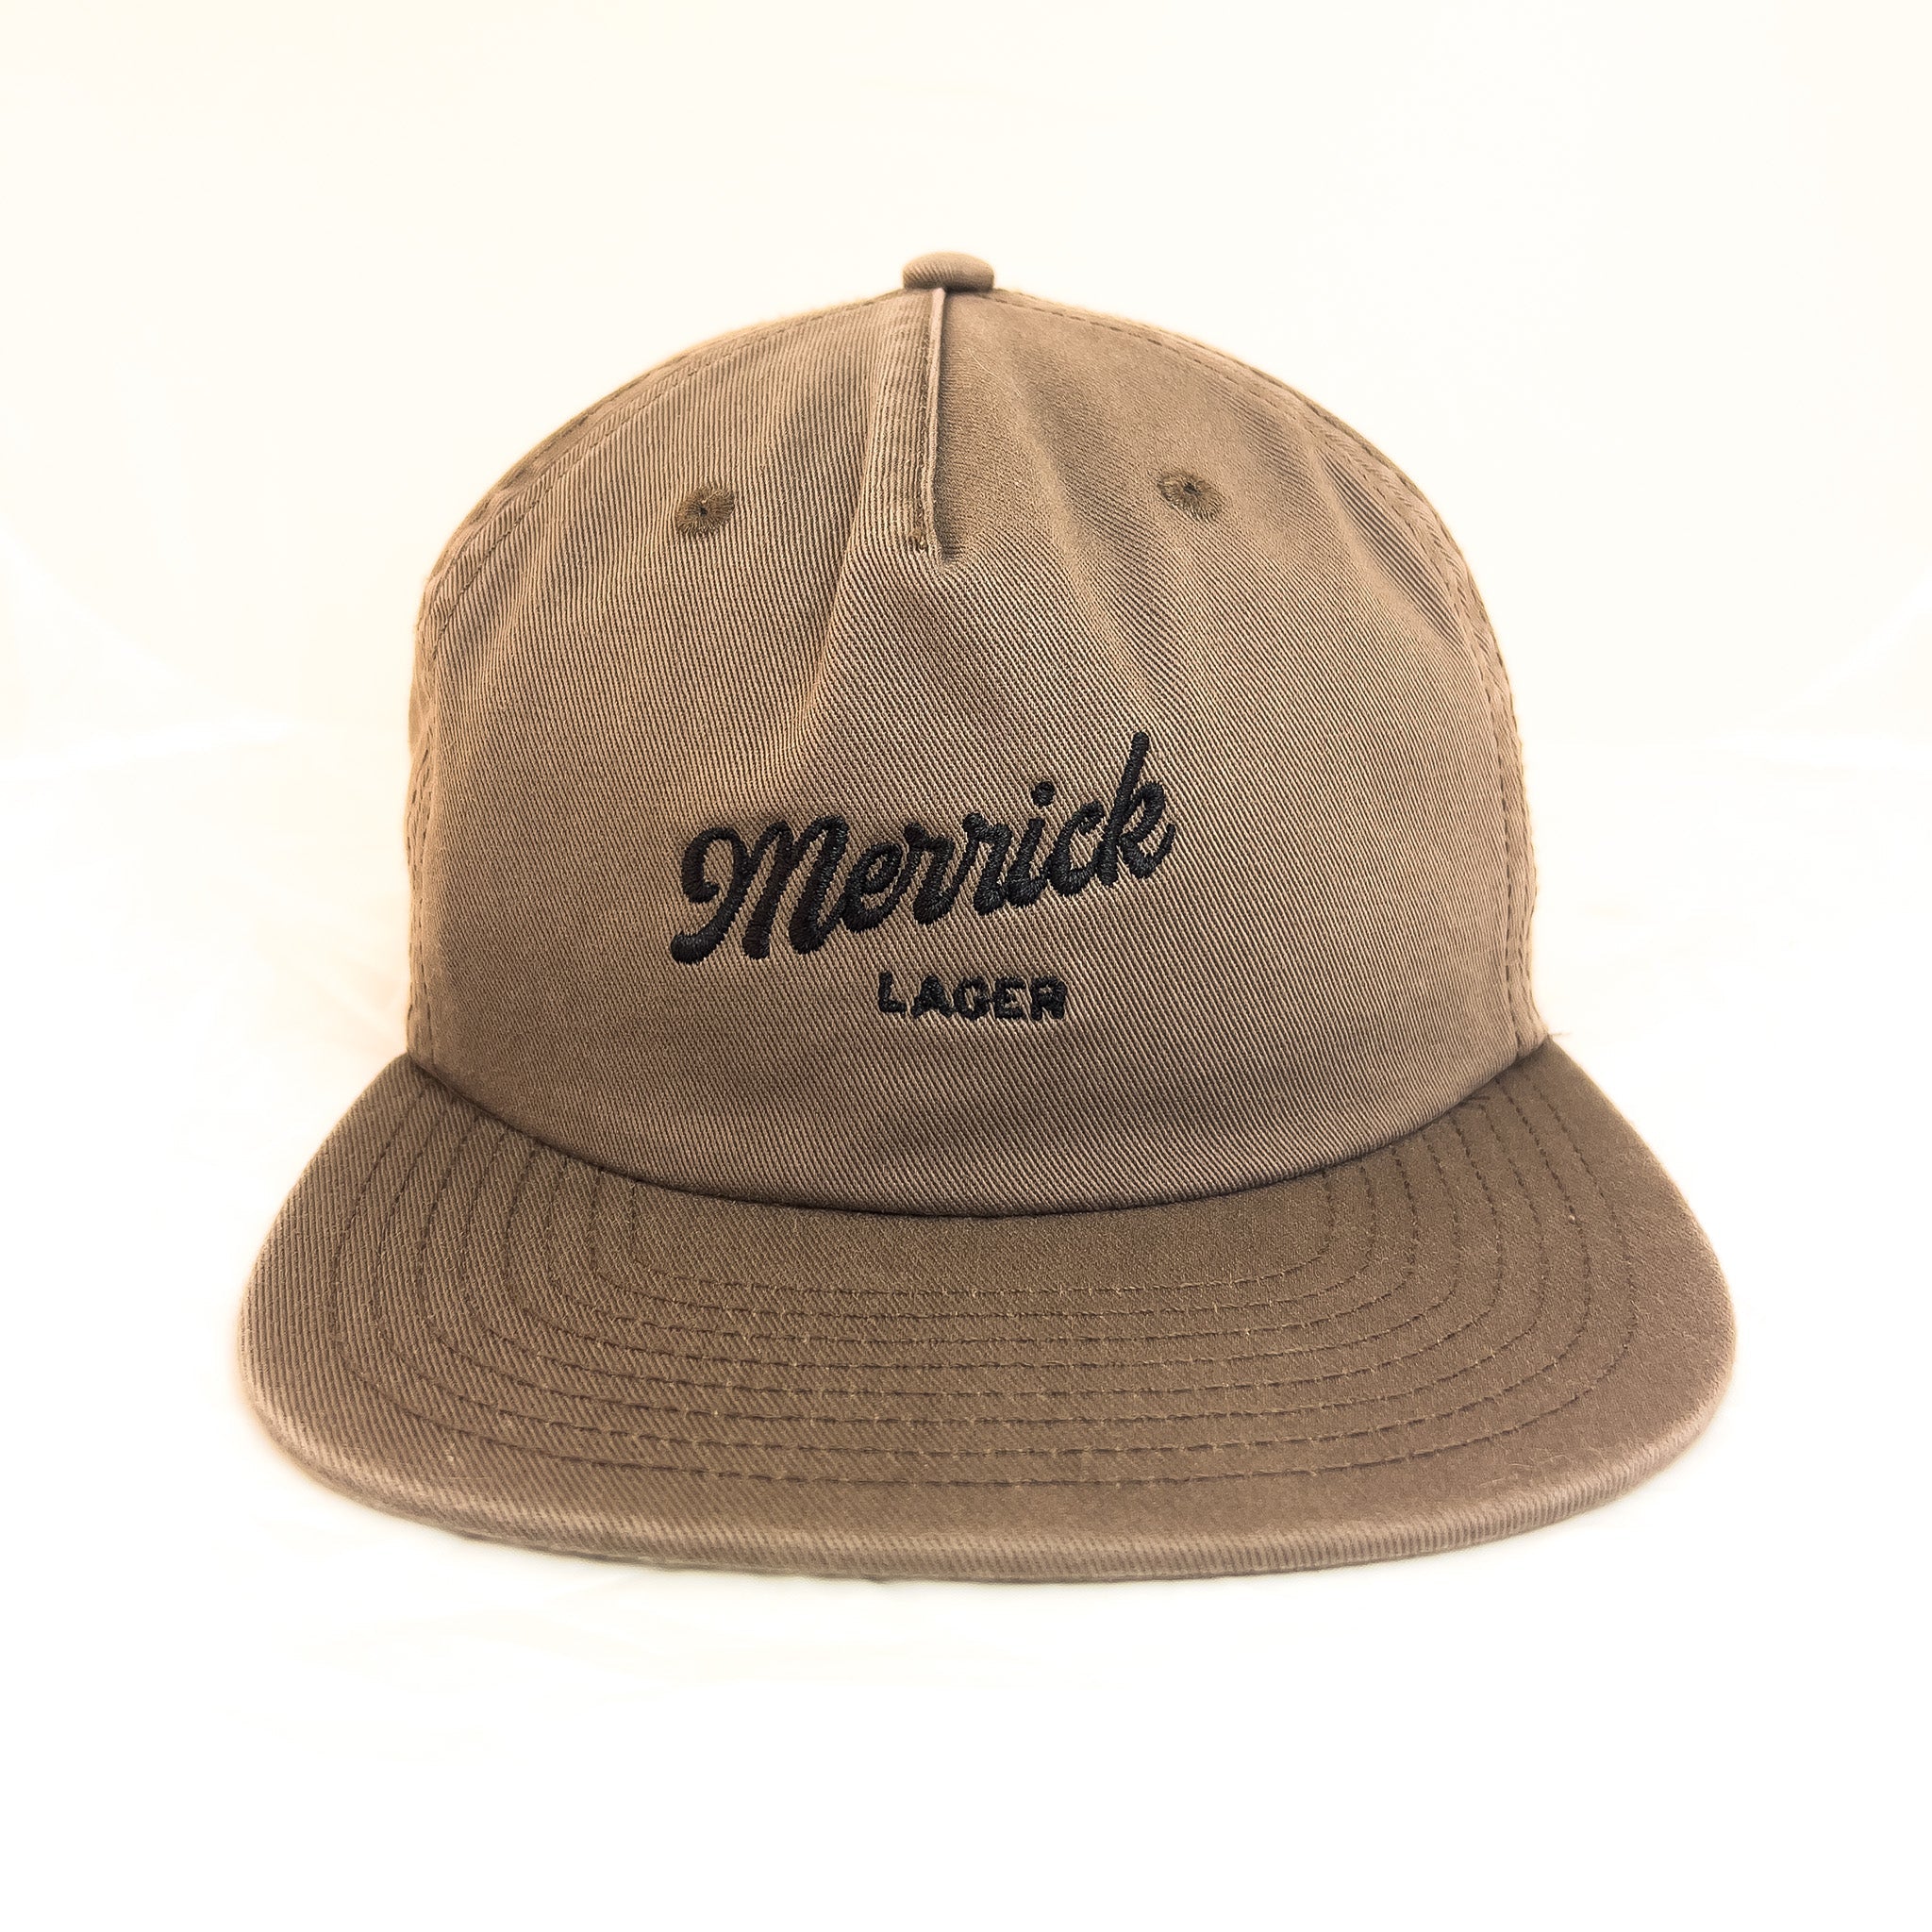 Merrick Lager General Hat